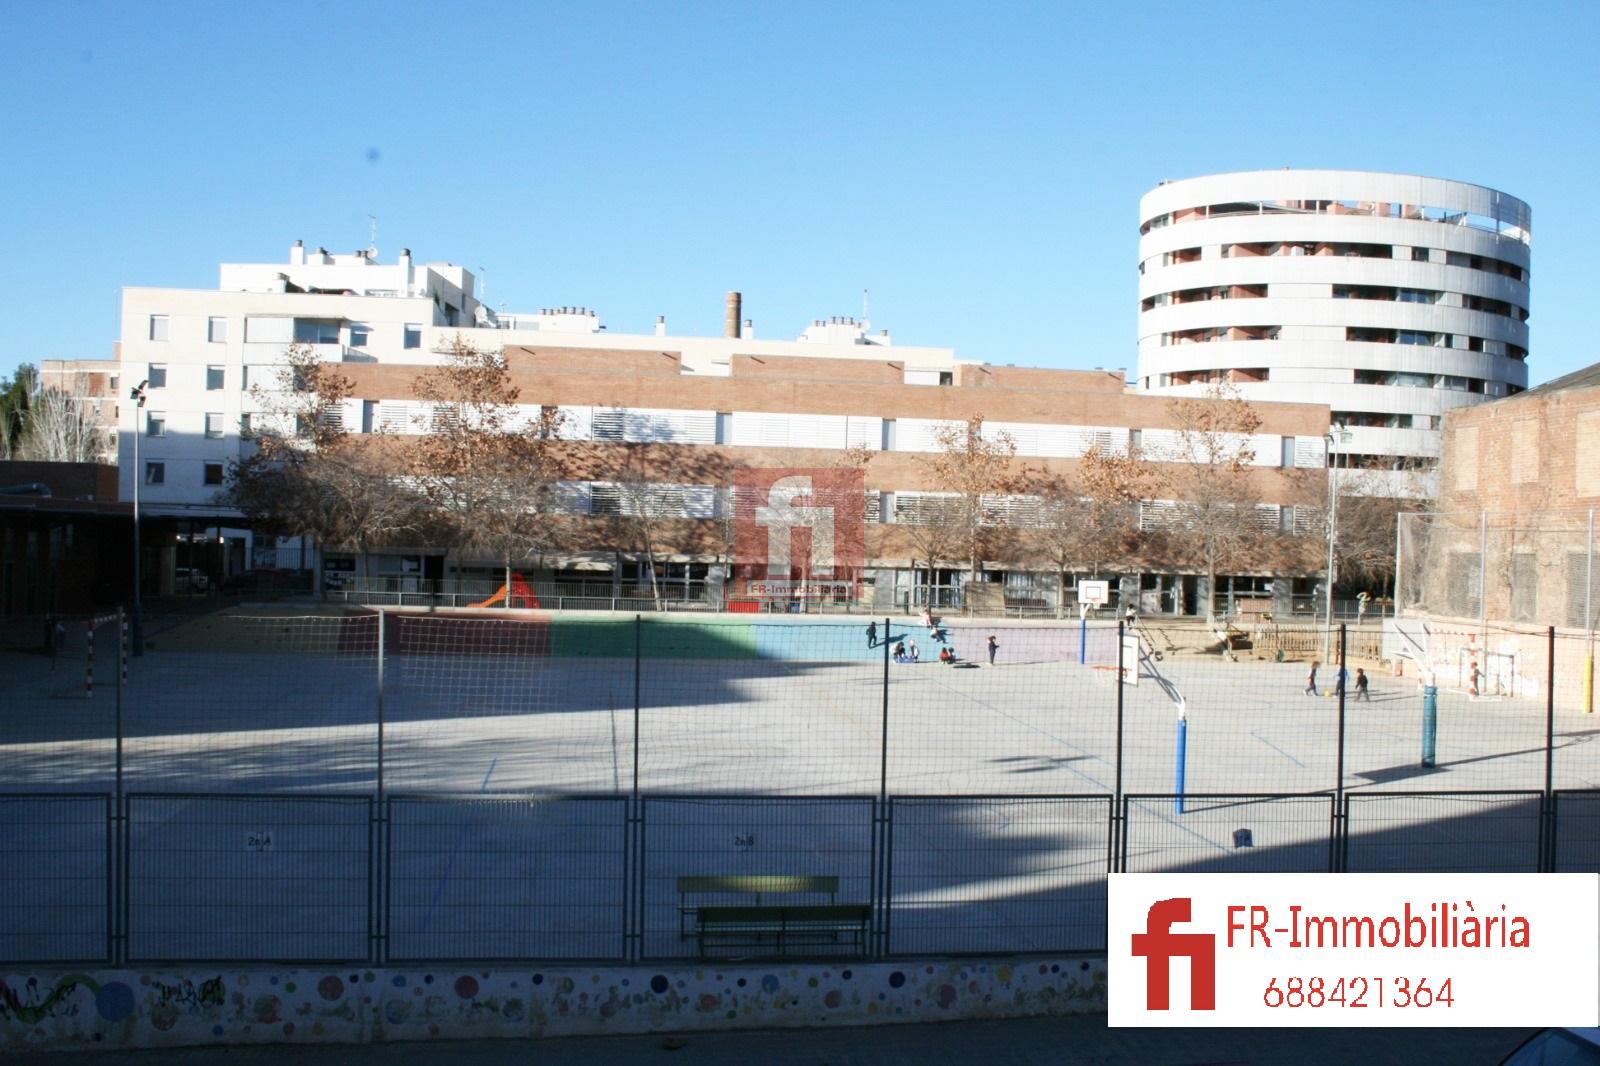 Salg av leilighet i Sabadell